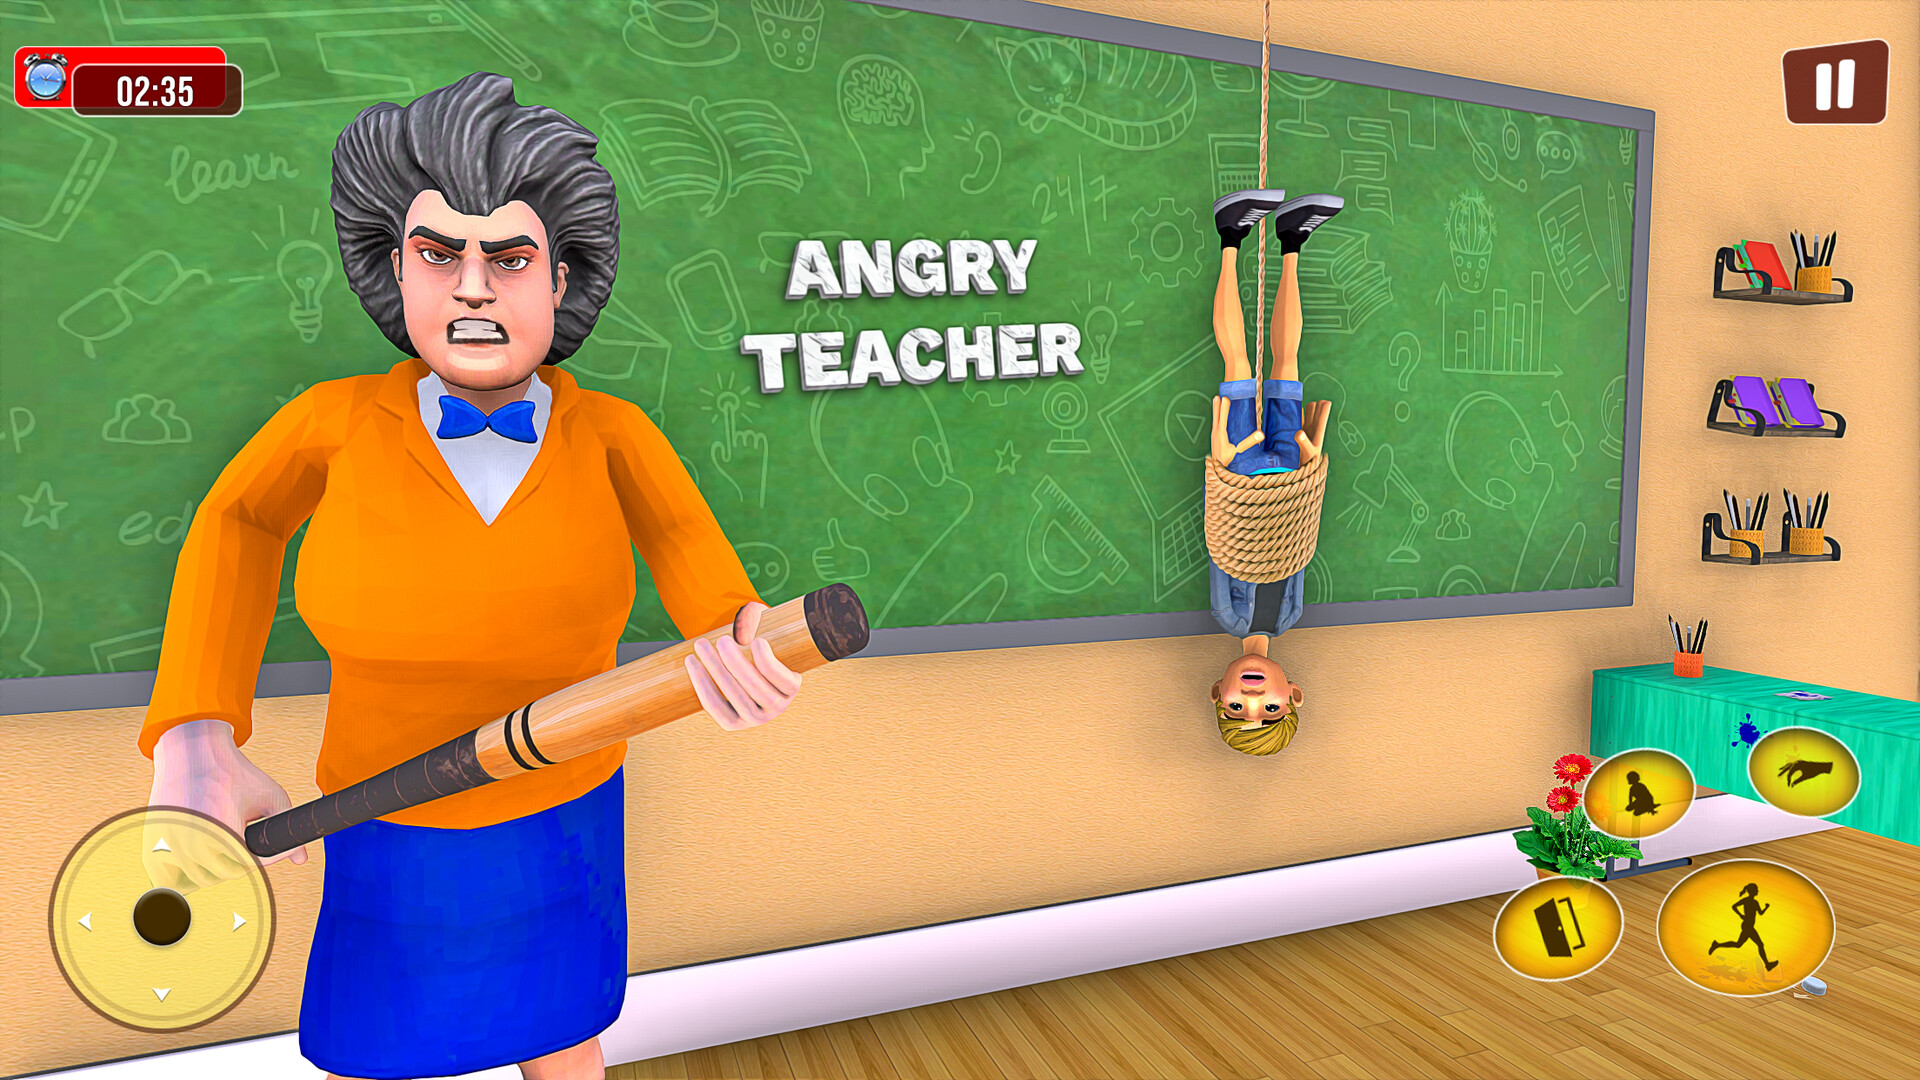 Scary Teacher 3D on Behance